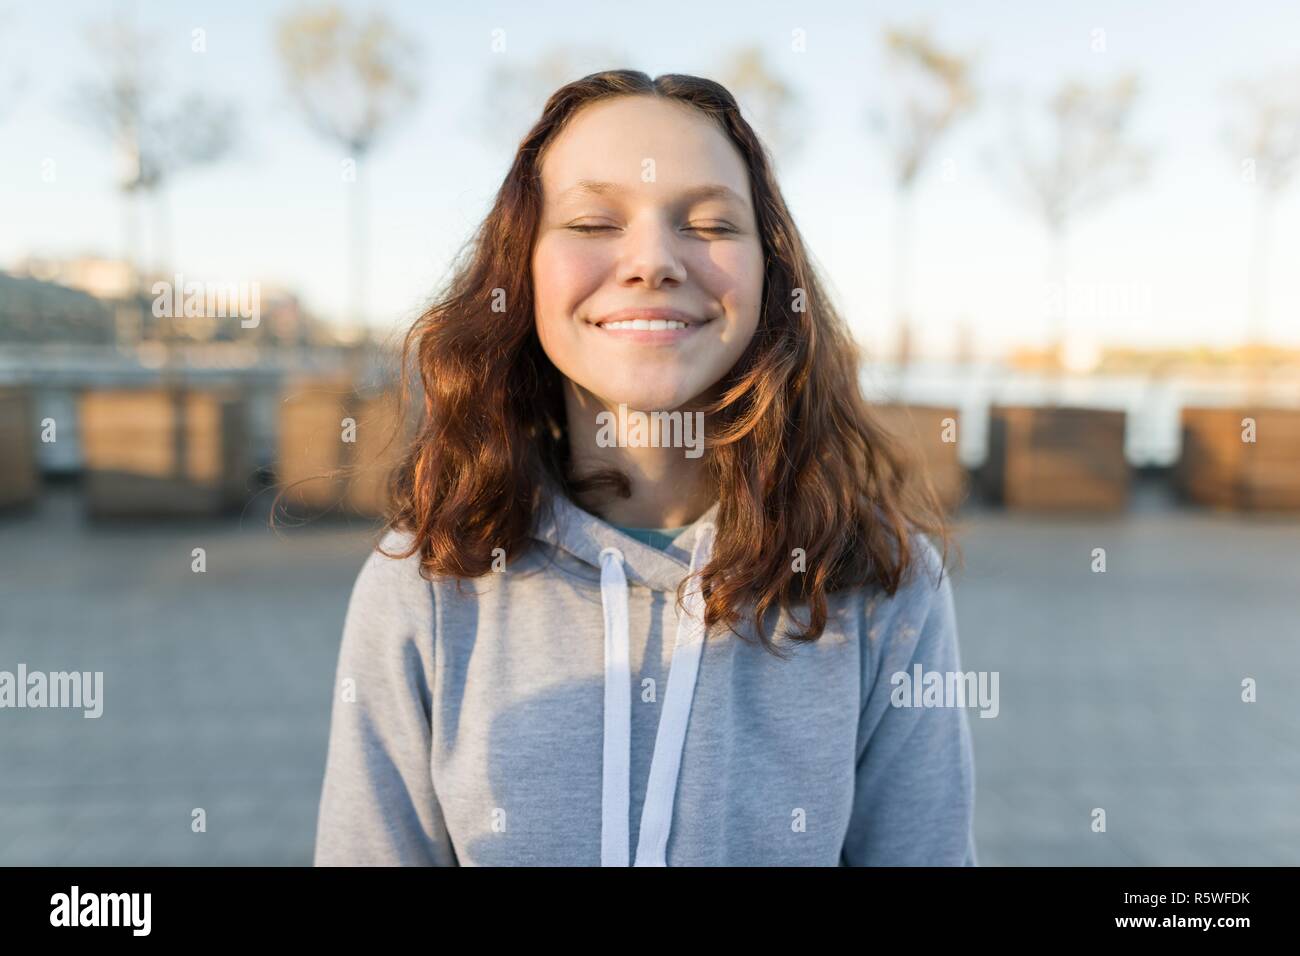 Portrait of a happy girl avec les yeux fermés, heure d'or Banque D'Images